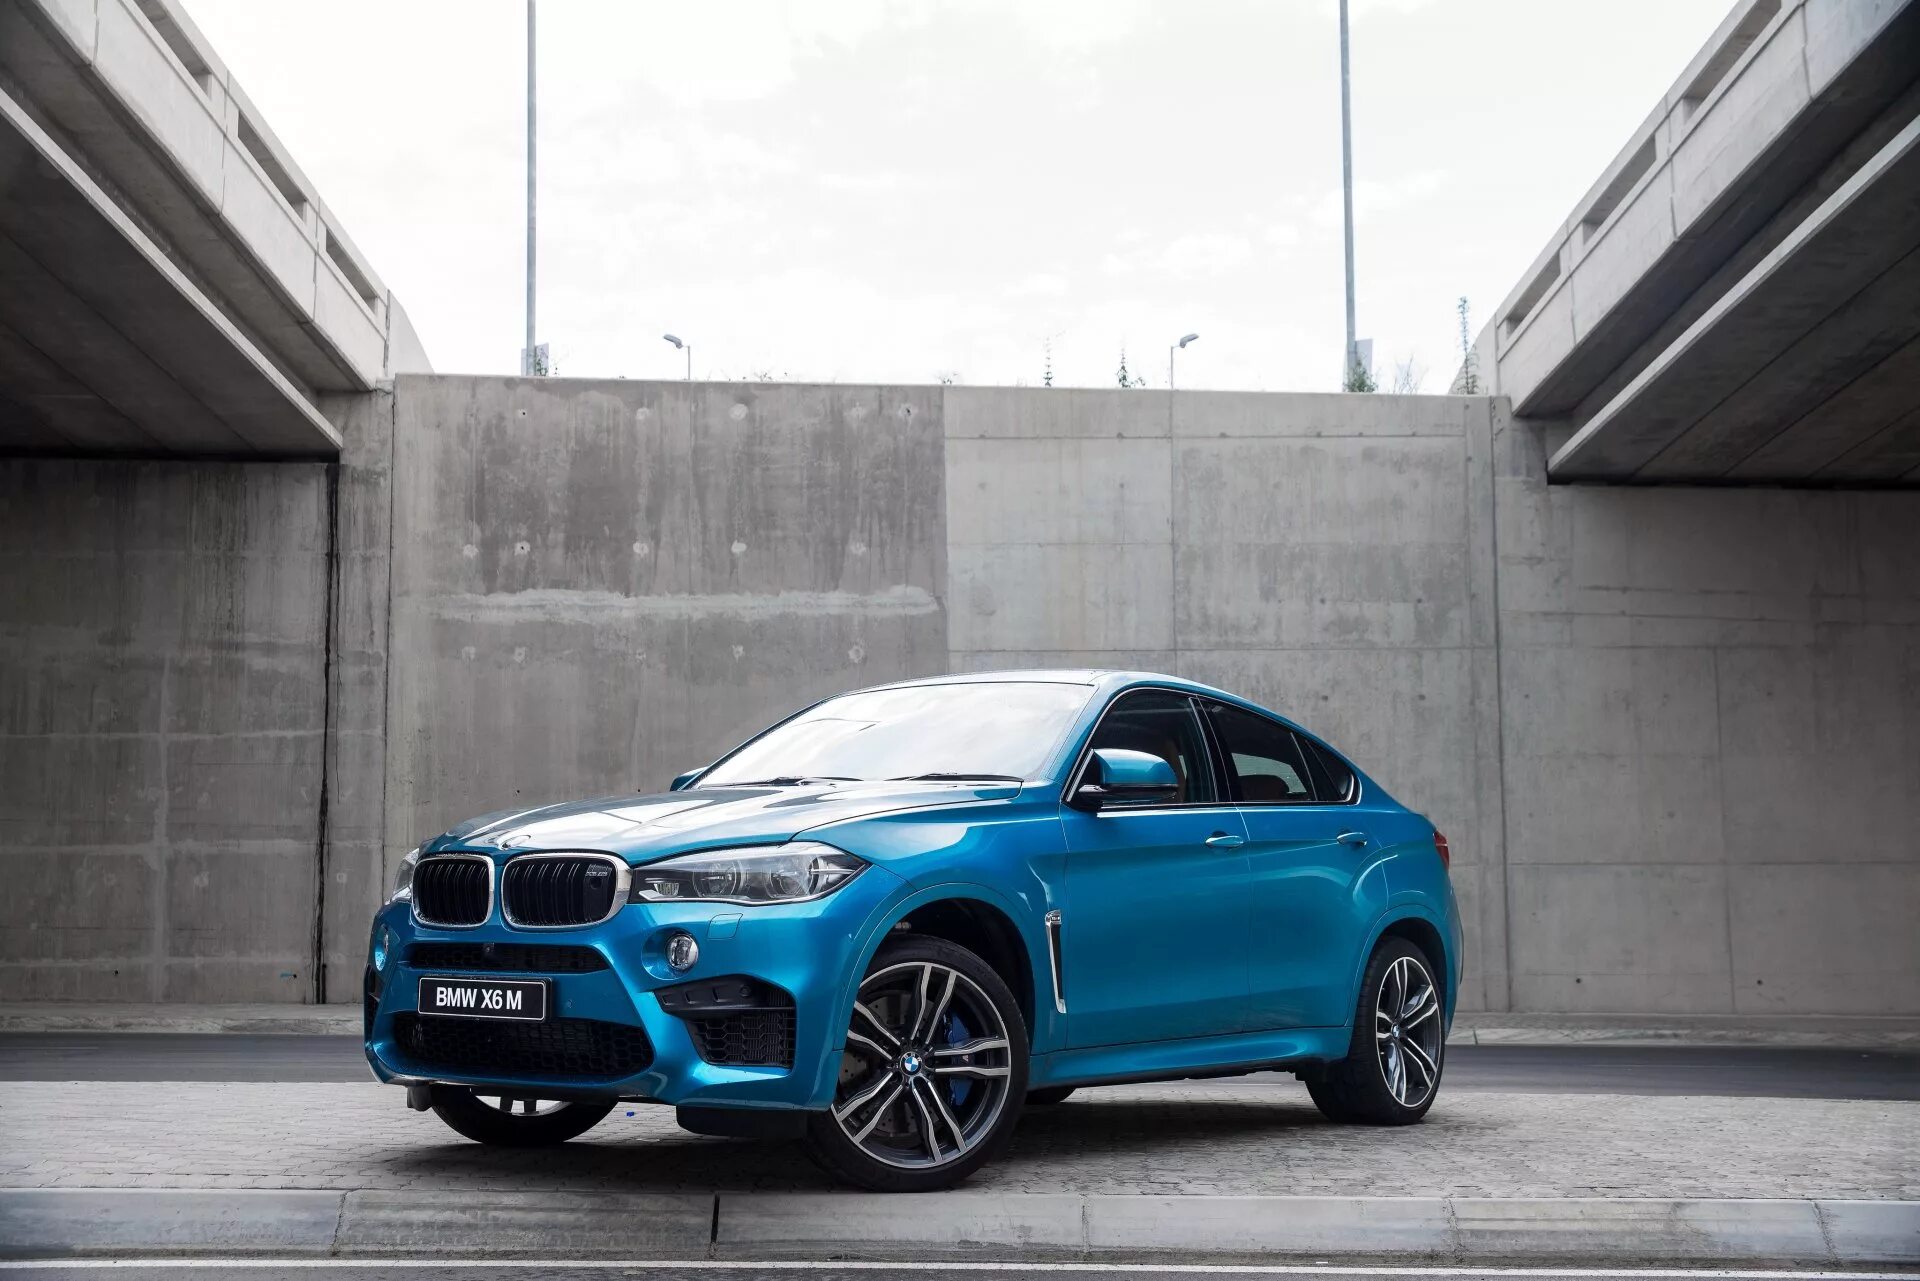 6 икс 16. BMW x6m. BMW x6 f16. БМВ x6m 2015. BMW x6m синяя.